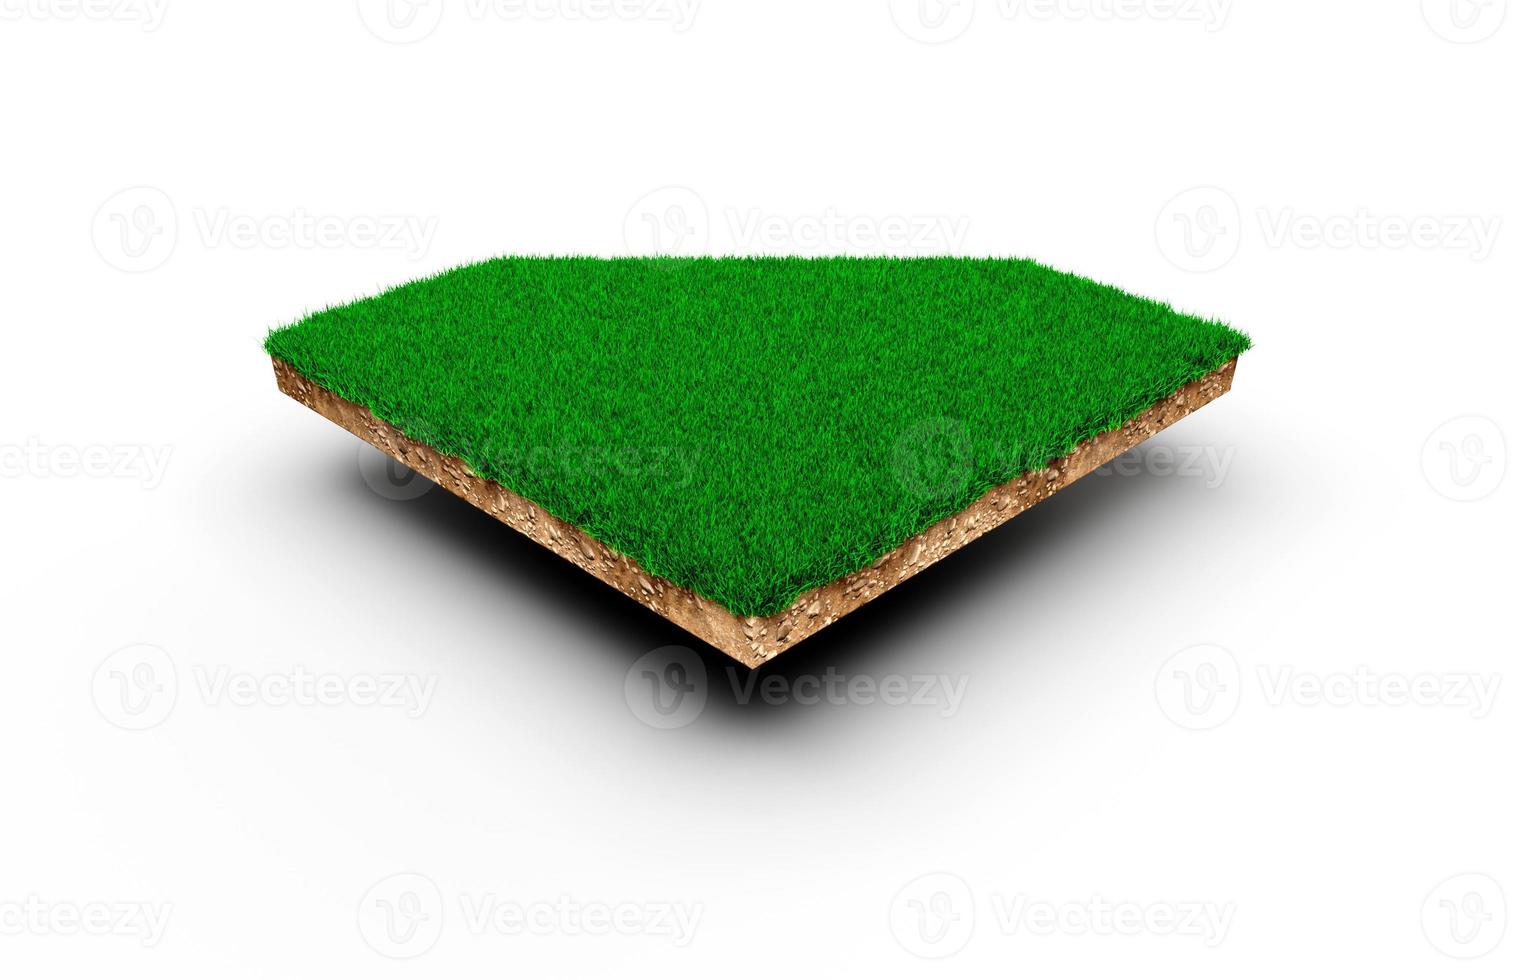 diamant maan vorm bodem land geologie doorsnede met groen gras, aarde modder weggesneden geïsoleerde 3d illustratie foto